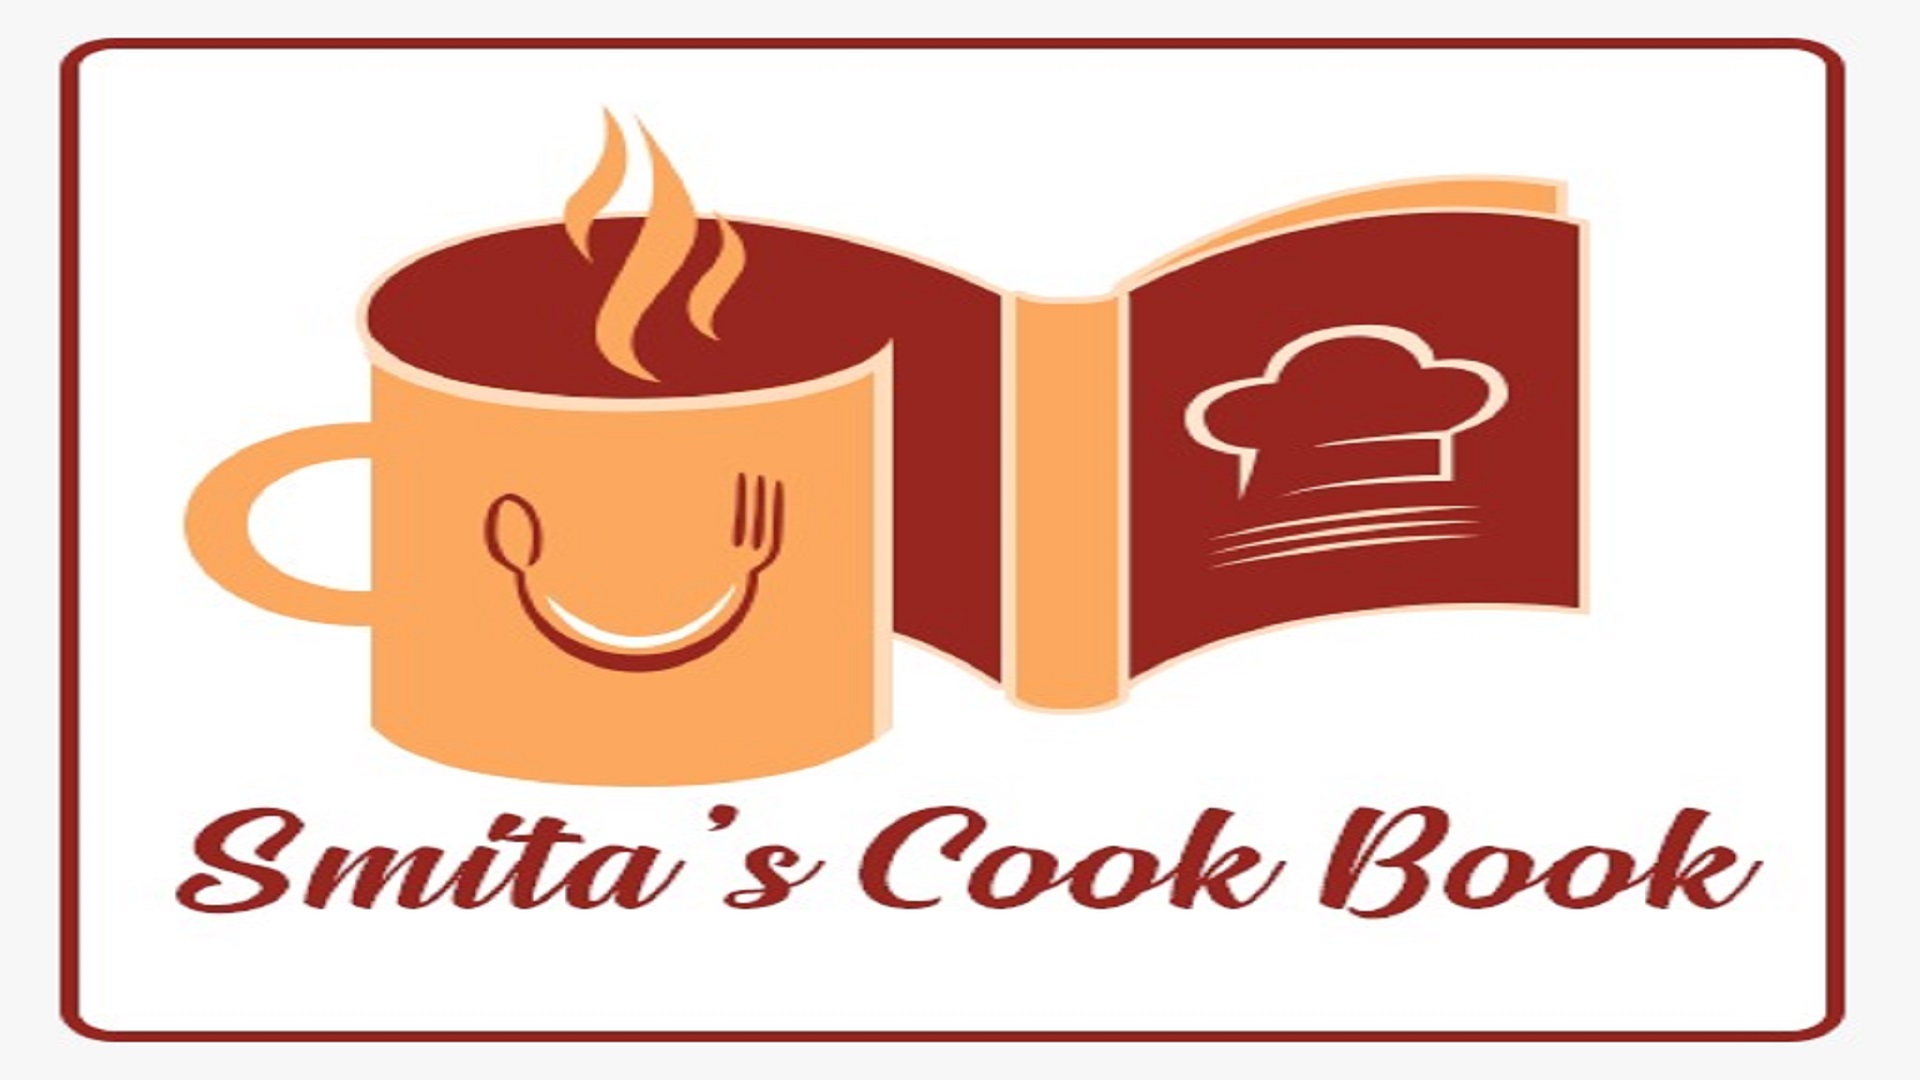 Smita's Cook Book